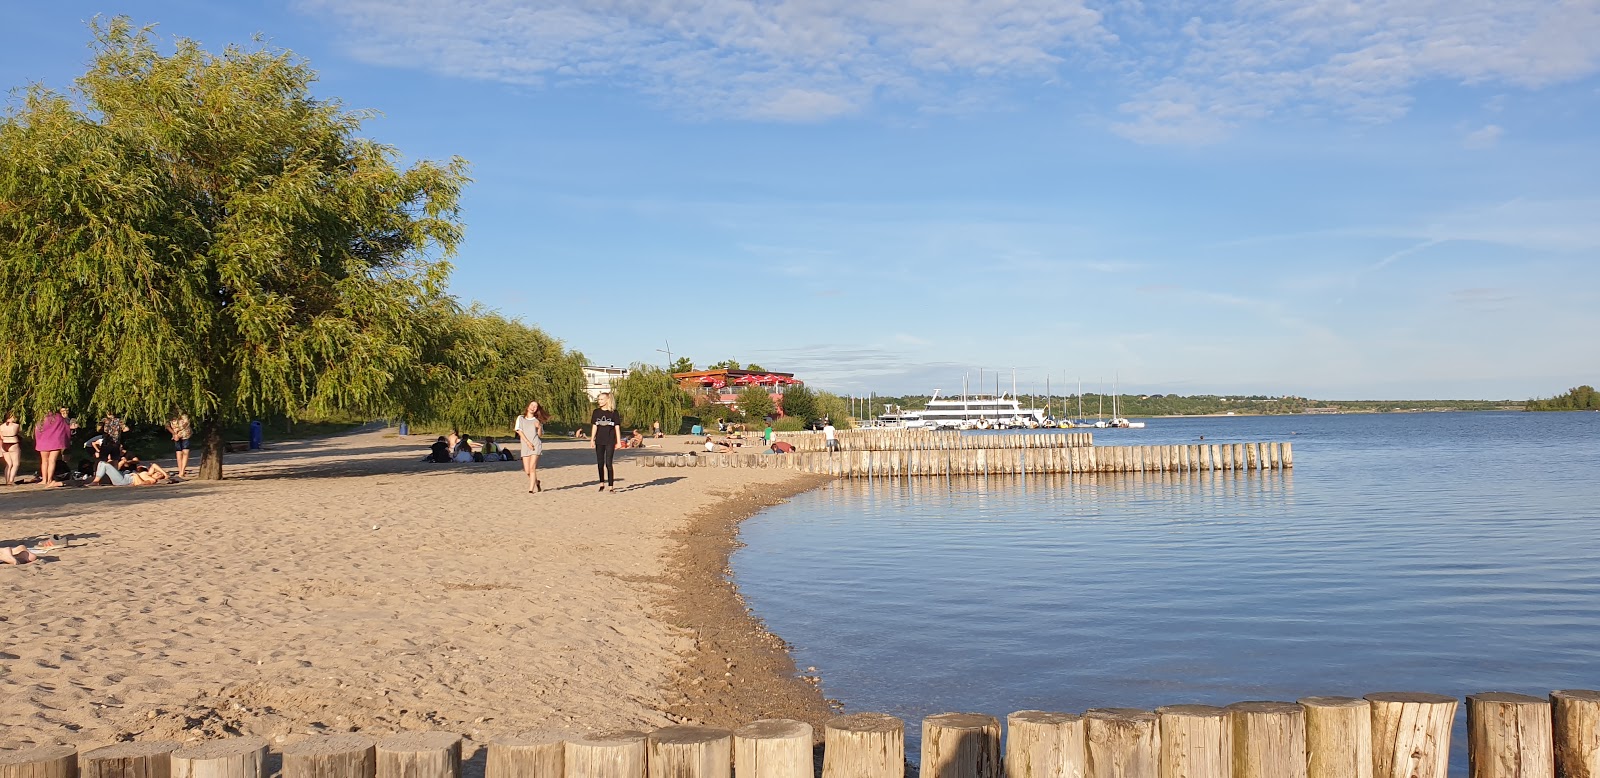 Foto af Markkleeberger See Strandbad med lige kyst